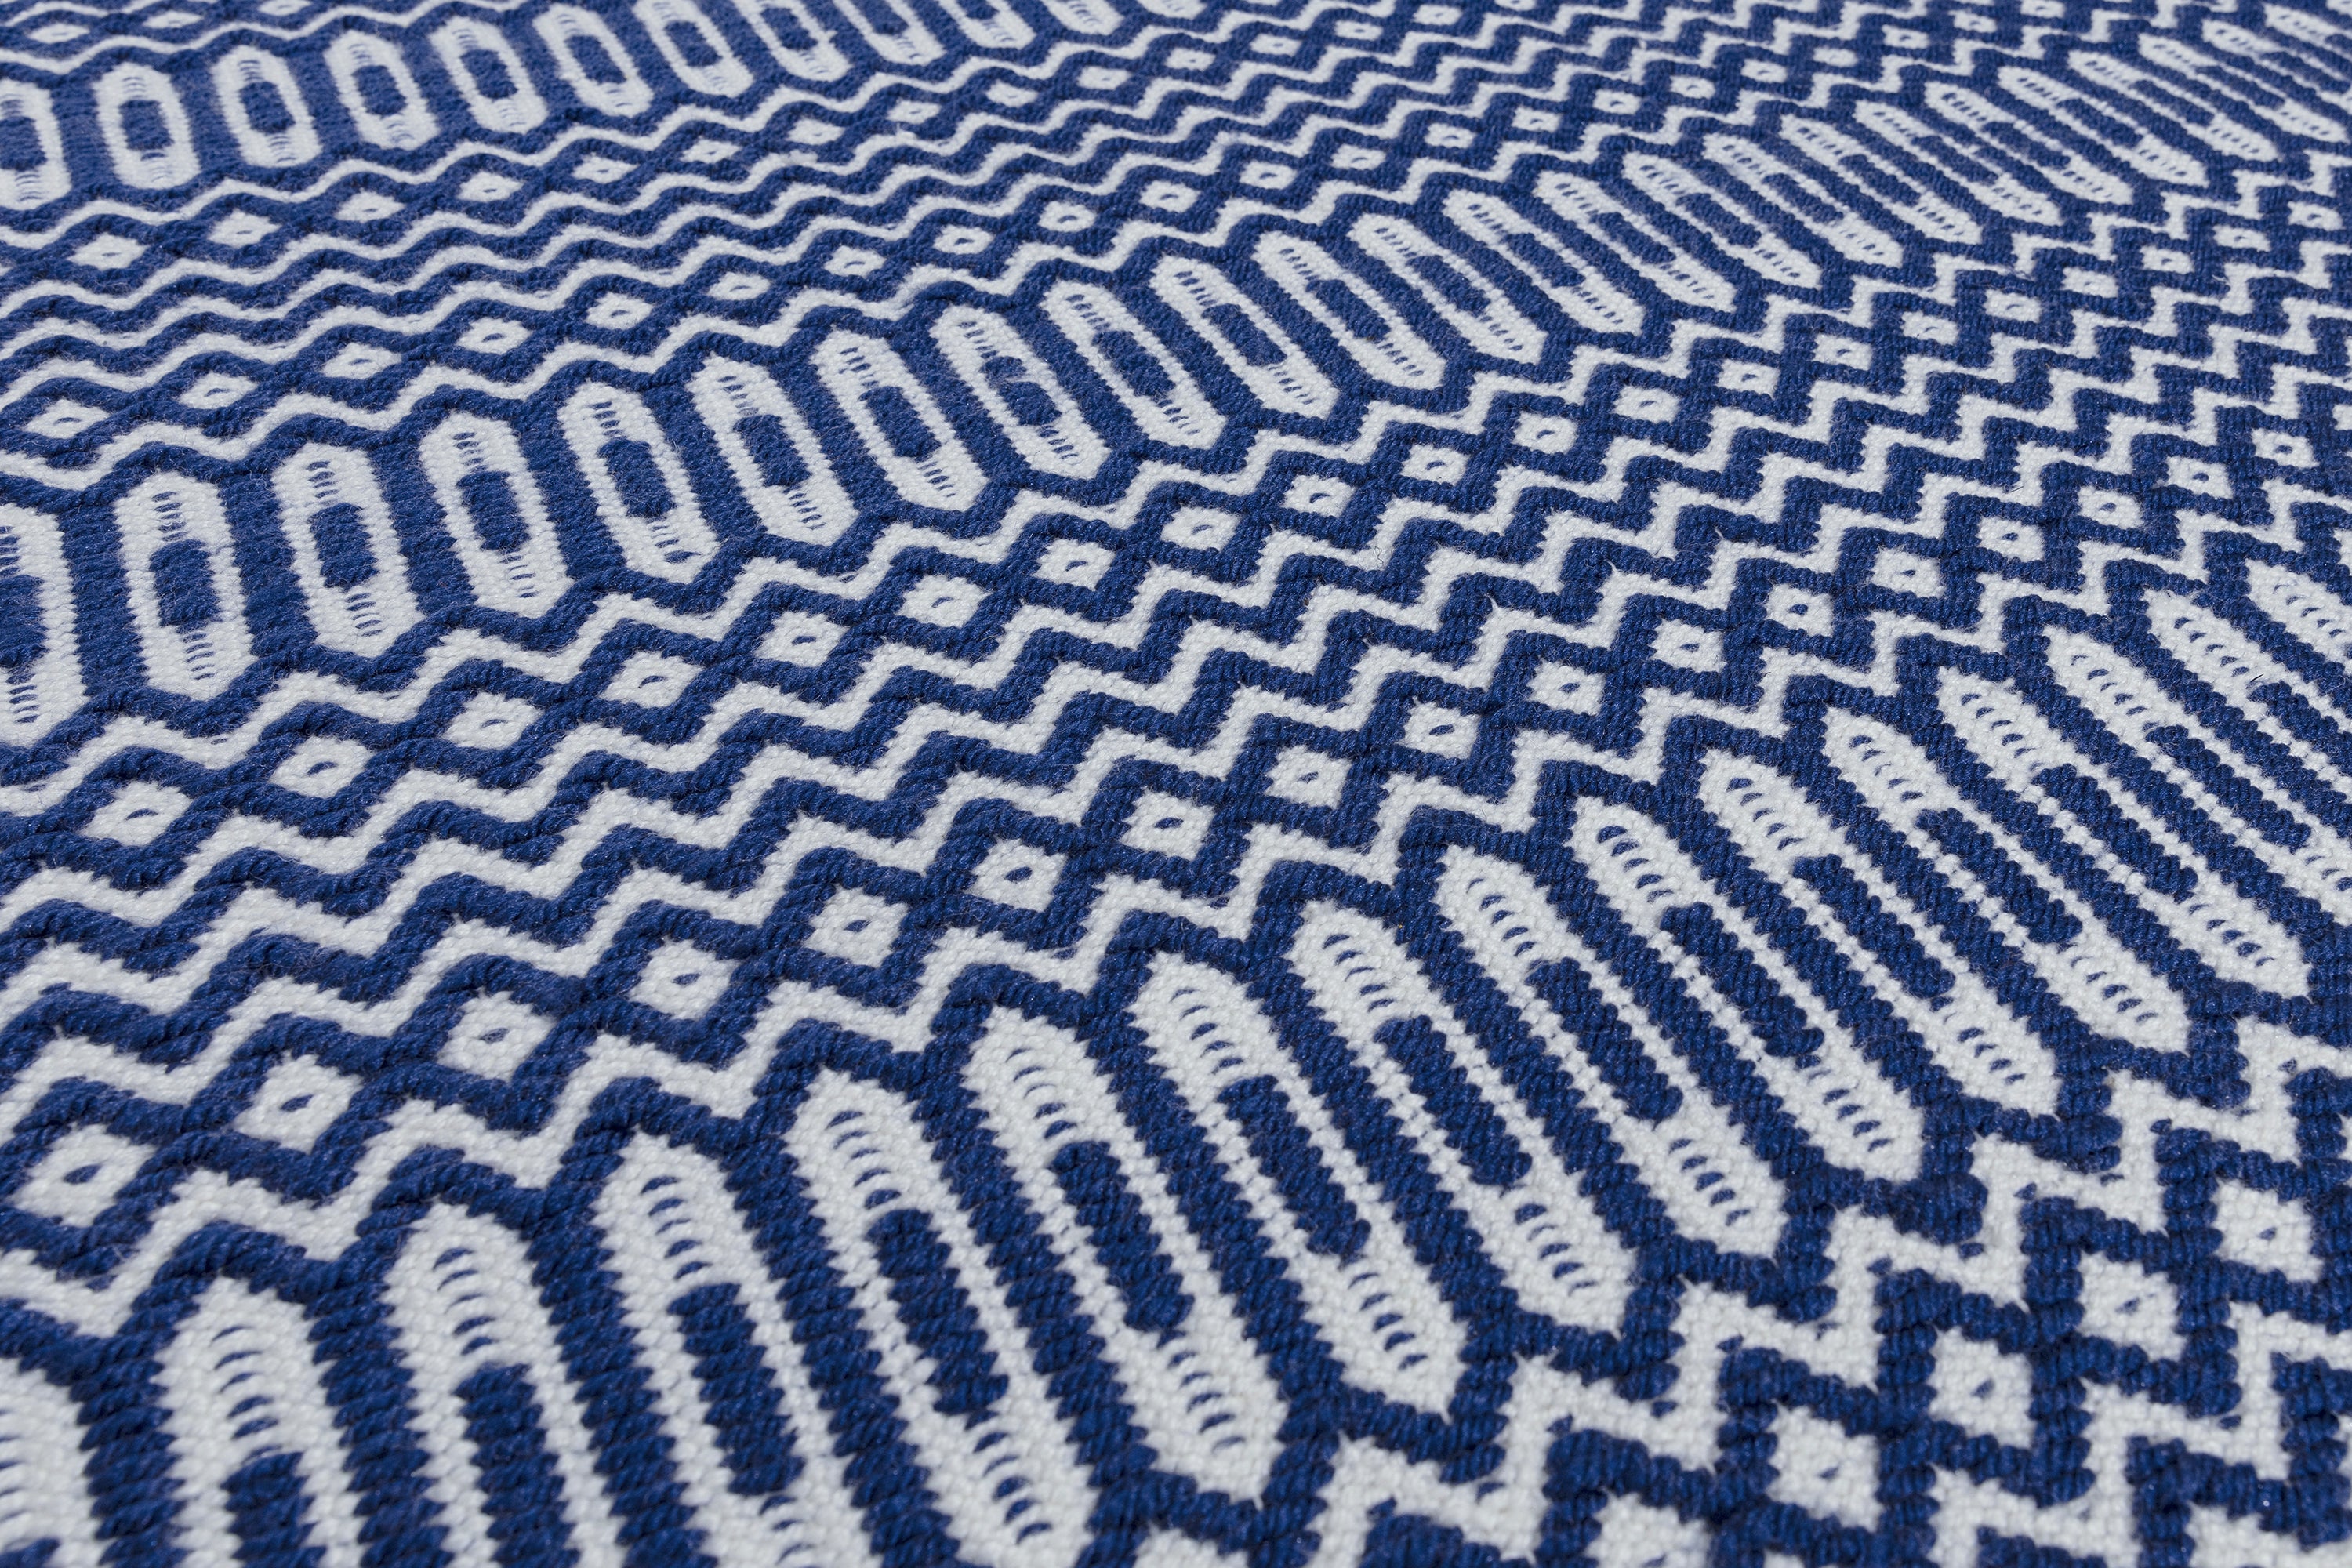 blue indoor/outdoor runner with geometric design